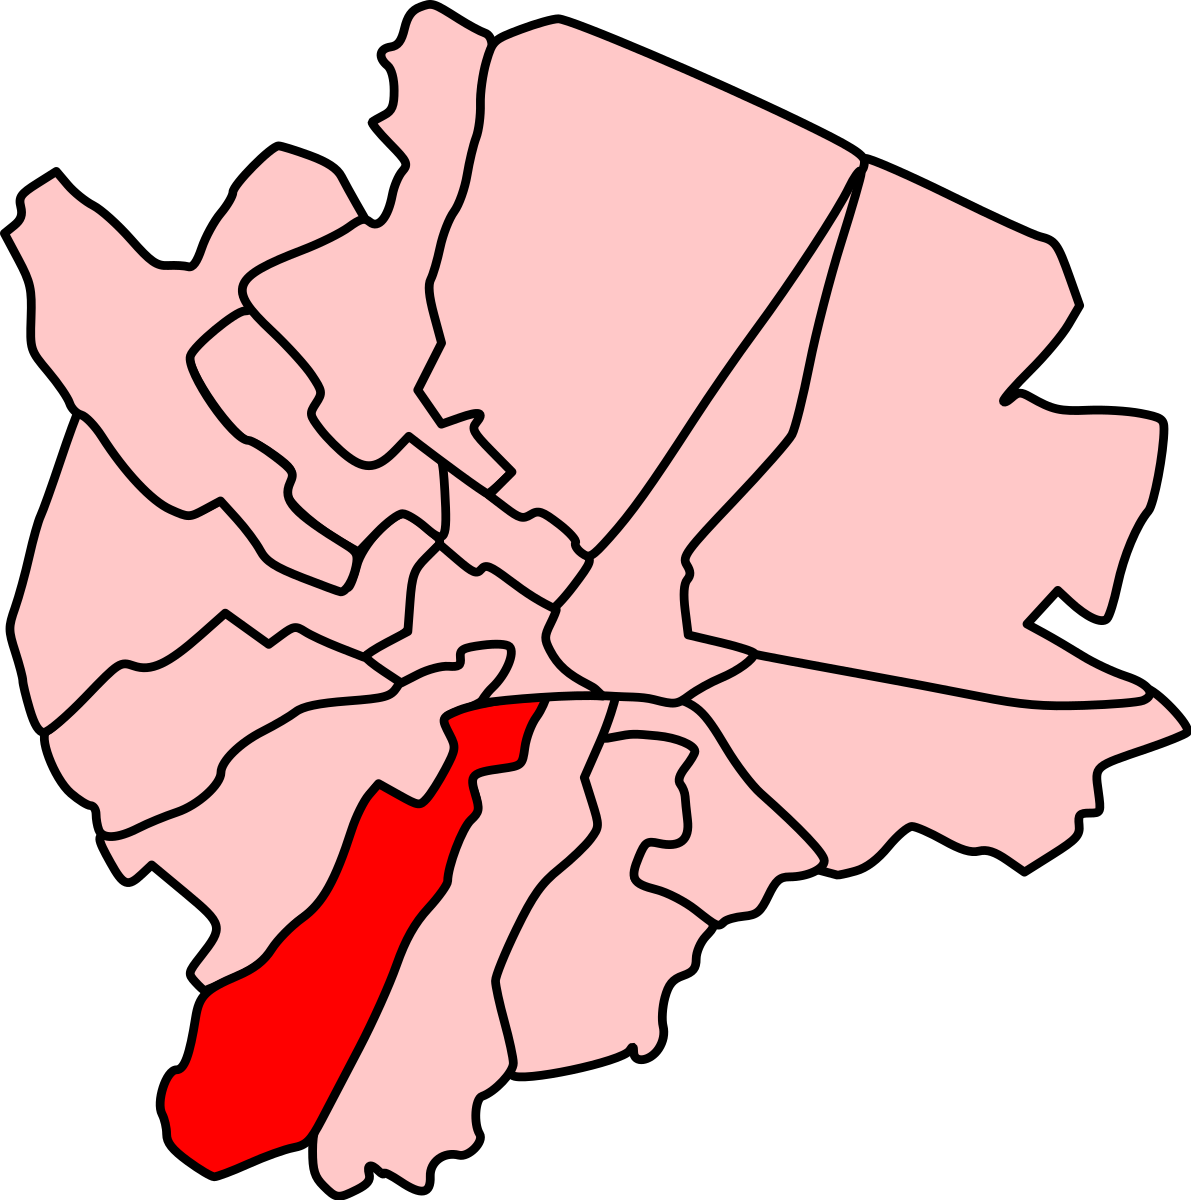 Belfast Windsor (Northern Ireland Parliament constituency)